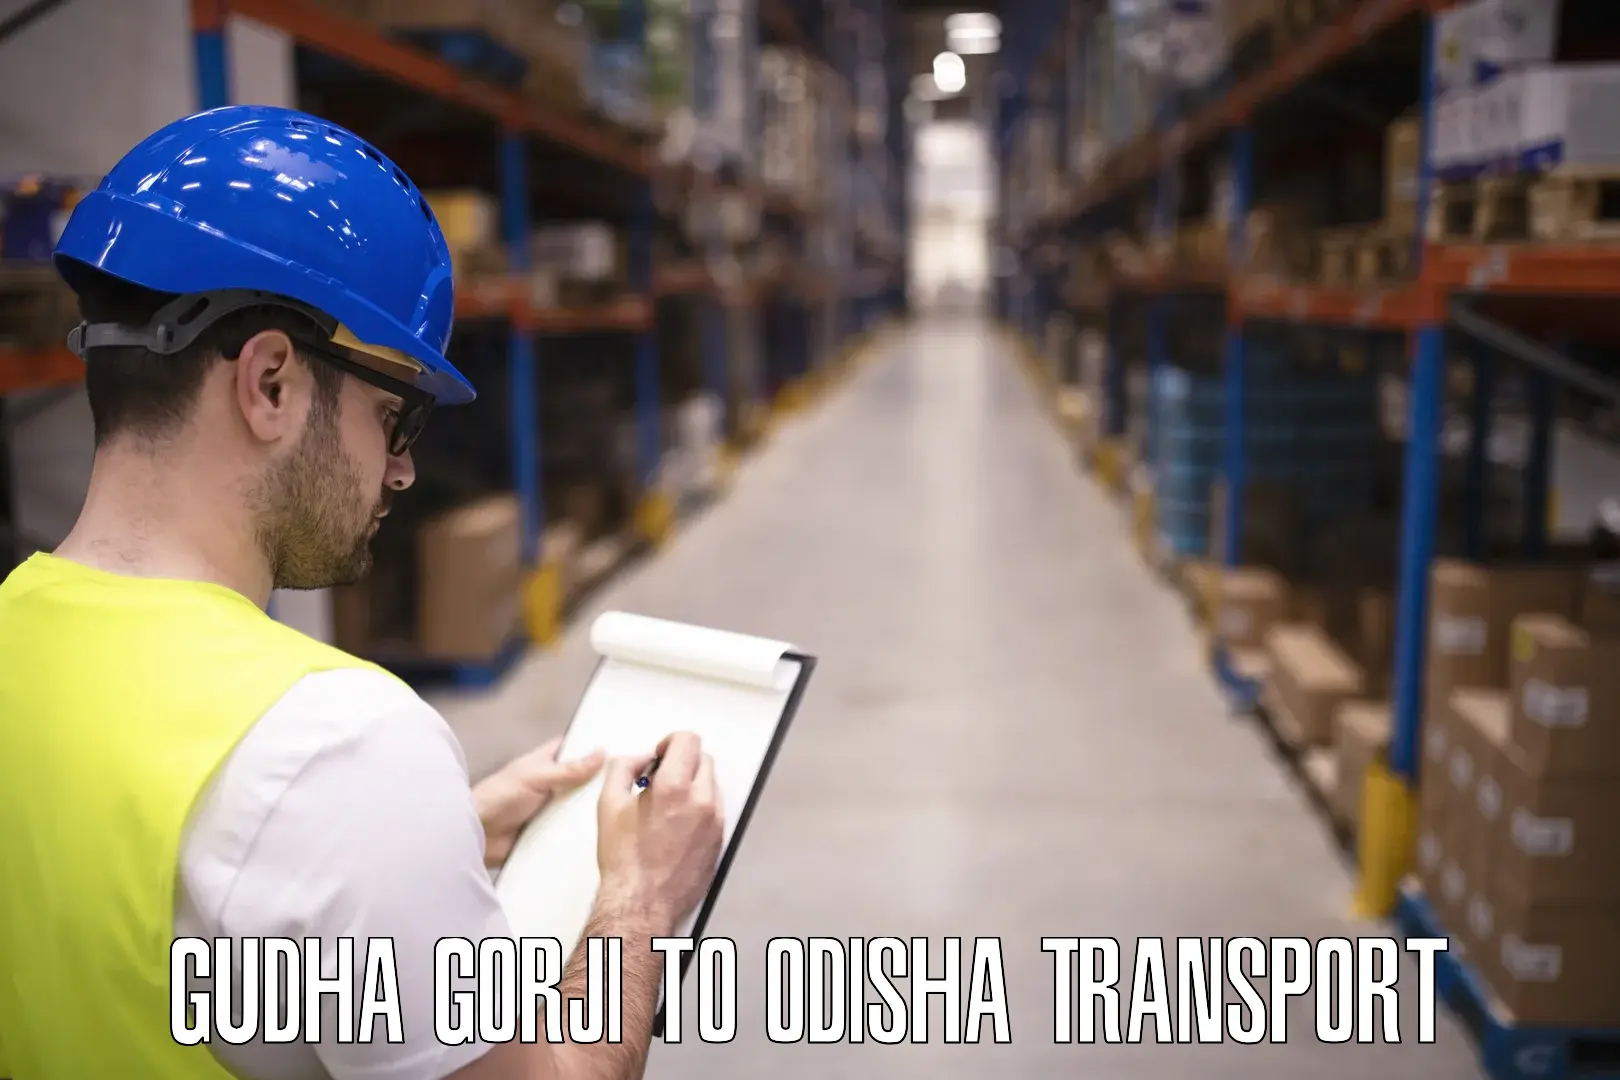 Container transport service Gudha Gorji to Asika